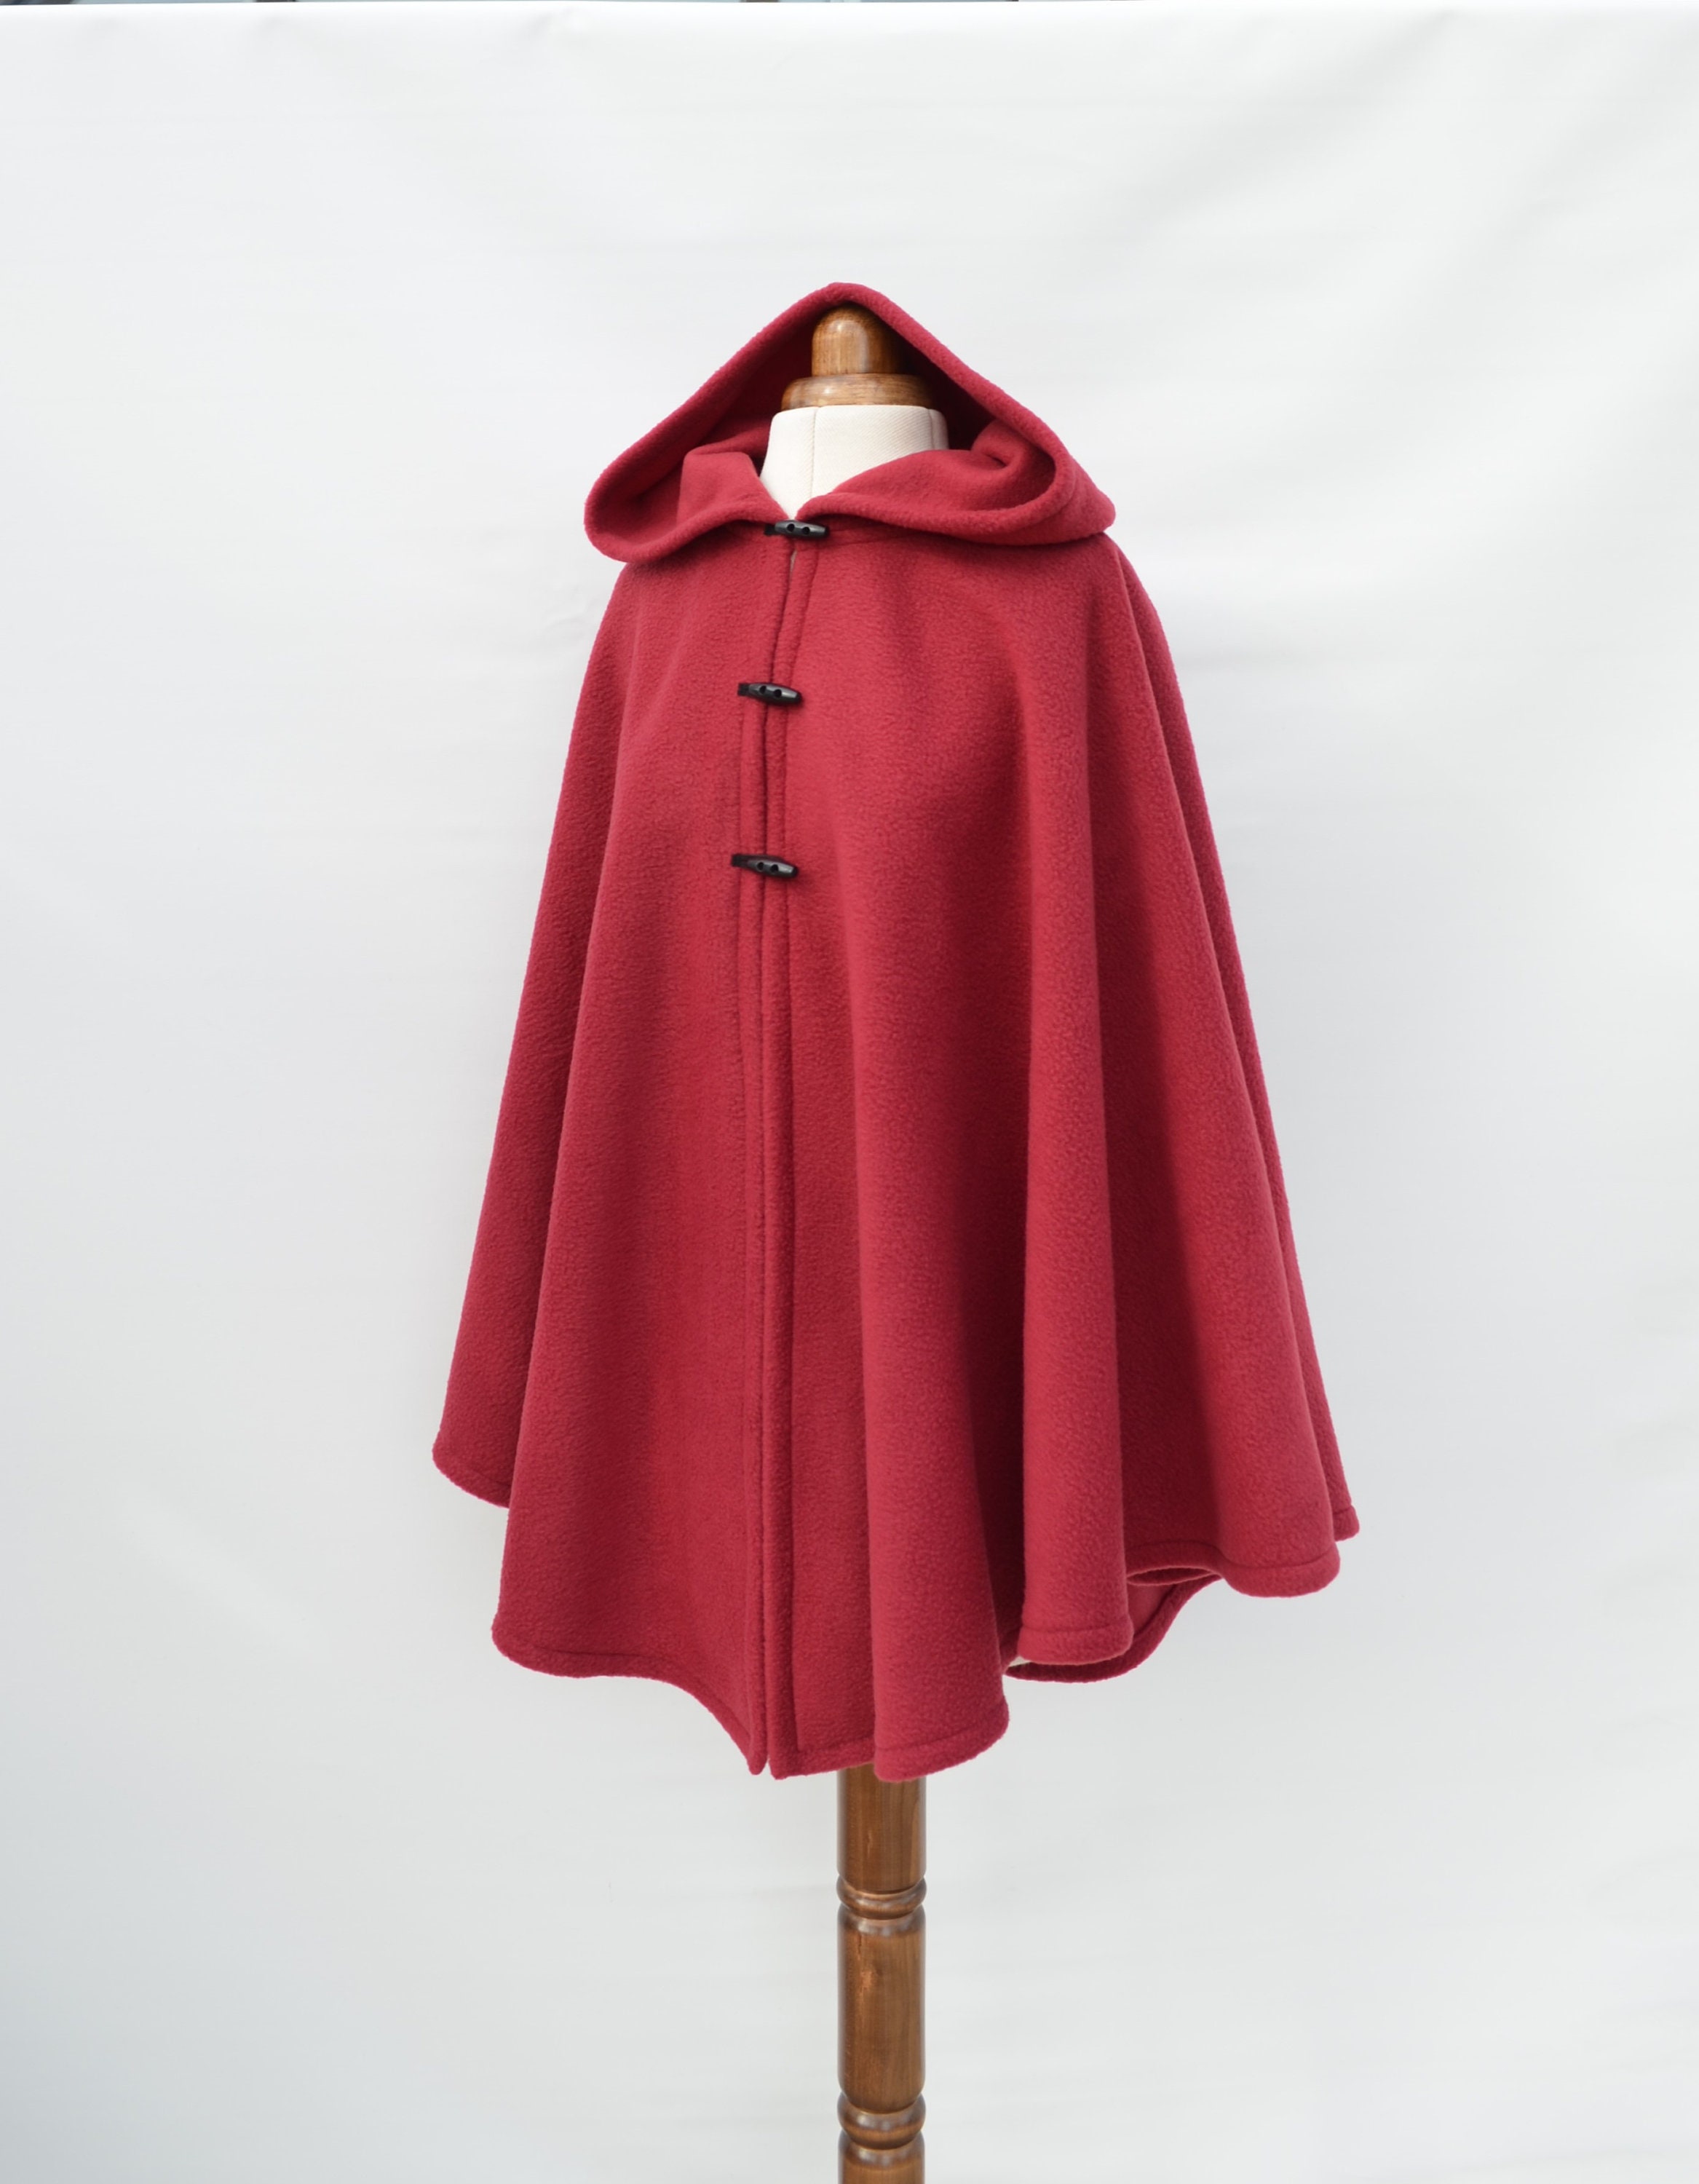 DeliCatStudio Waterproof and Windproof Cape Coat, Green or Black Hooded Cloak, Women's Outdoor Raincoat, Handmade Rain Poncho